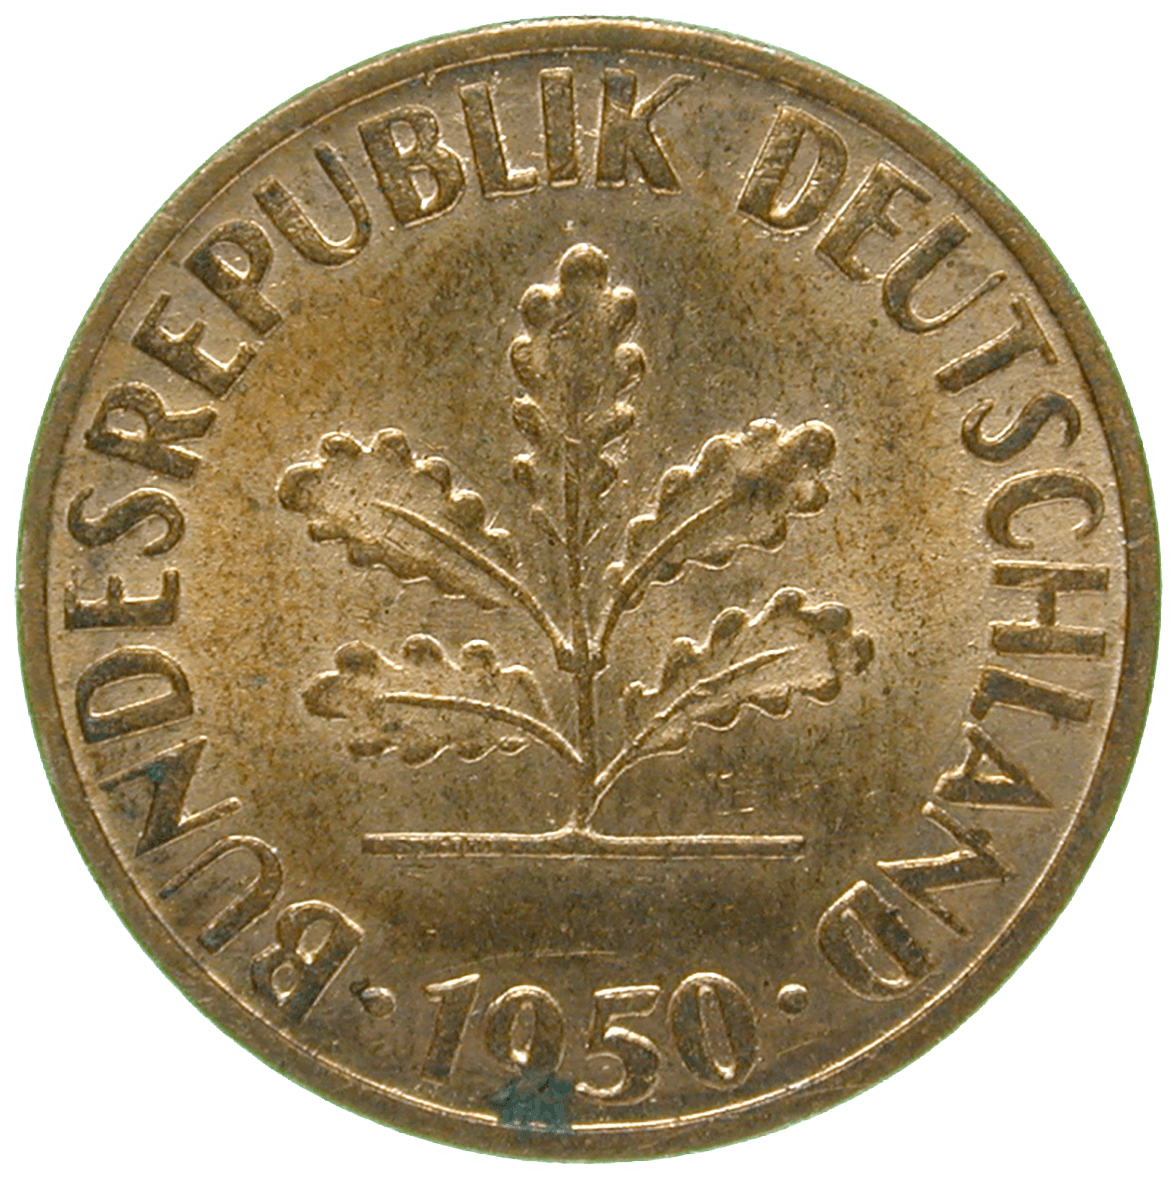 Bundesrepublik Deutschland, 1 Pfennig 1950 (obverse)